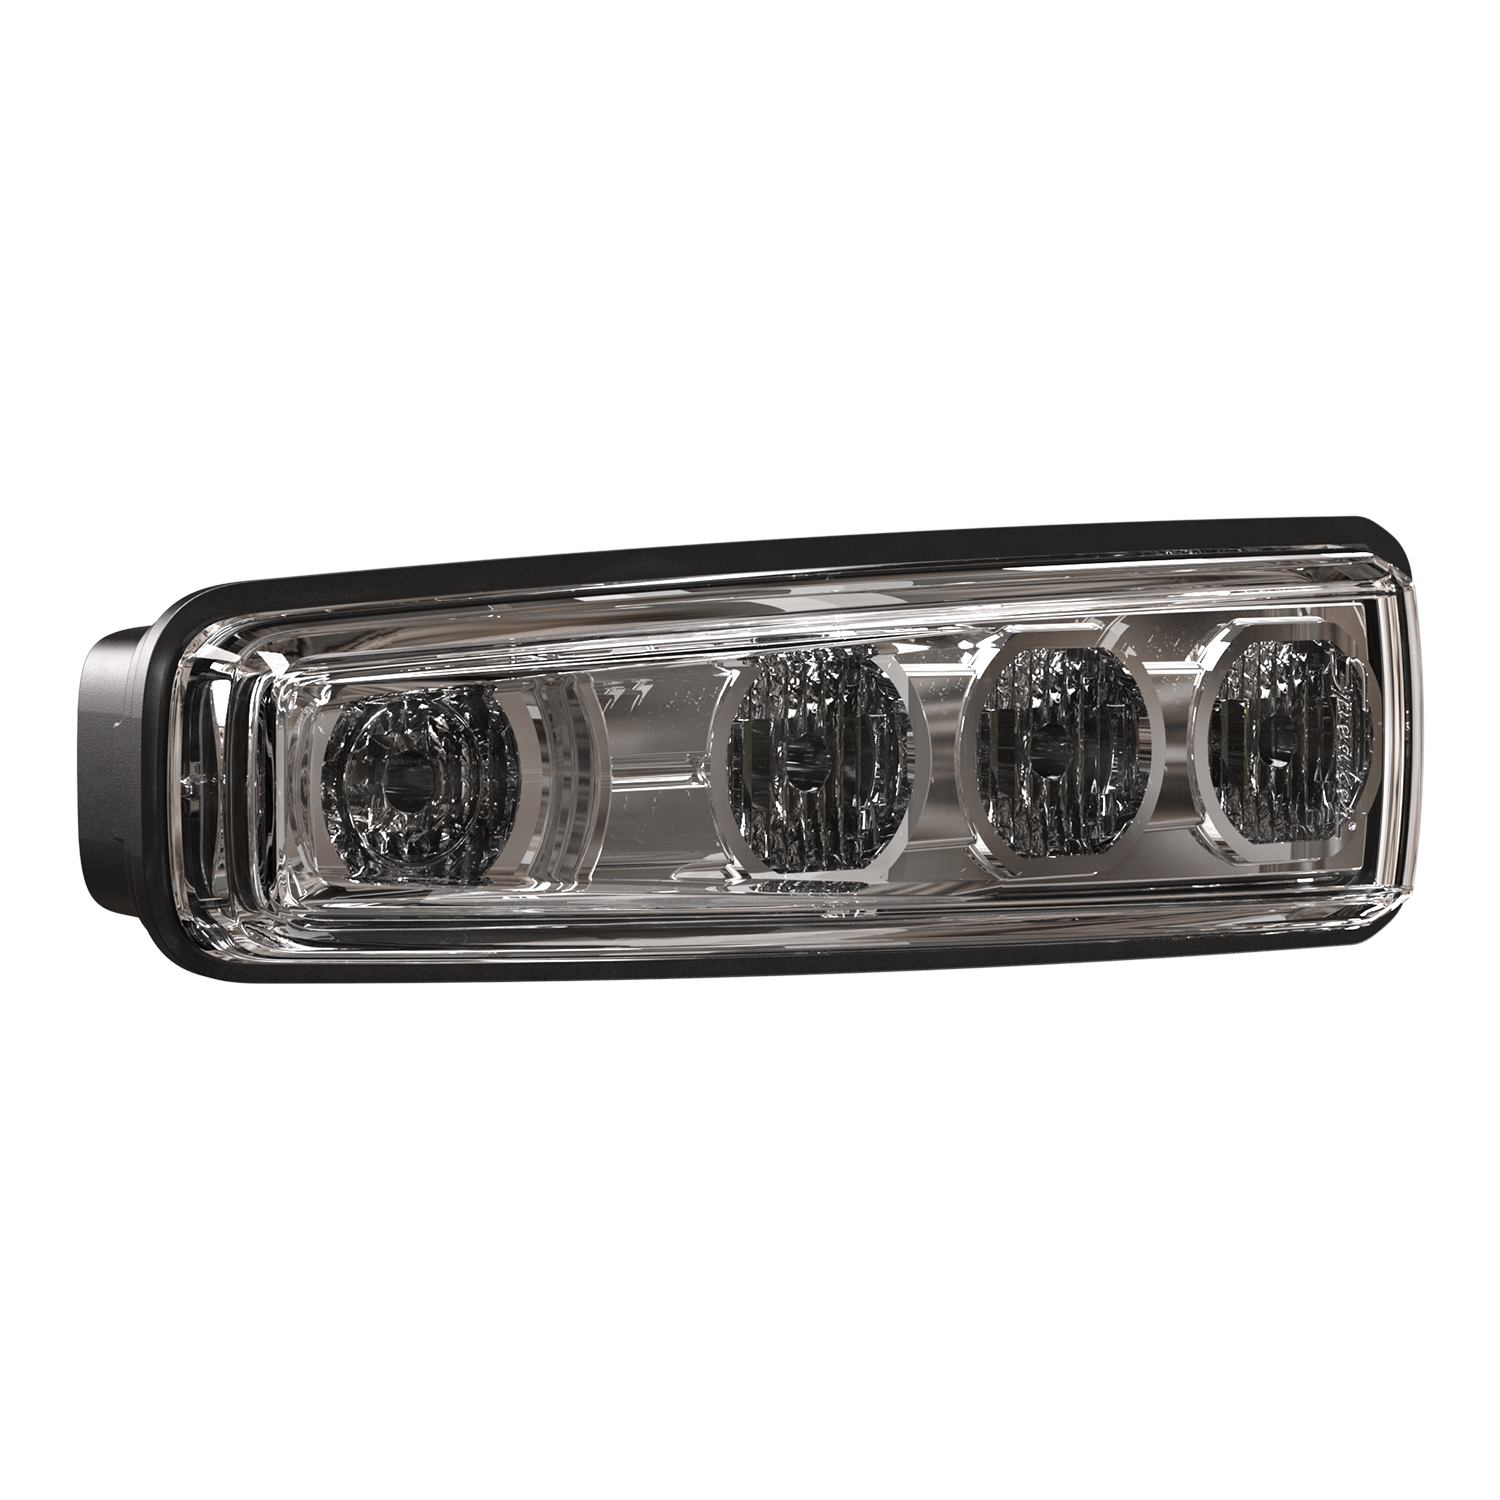 LED Forklift Headlights – Model 516